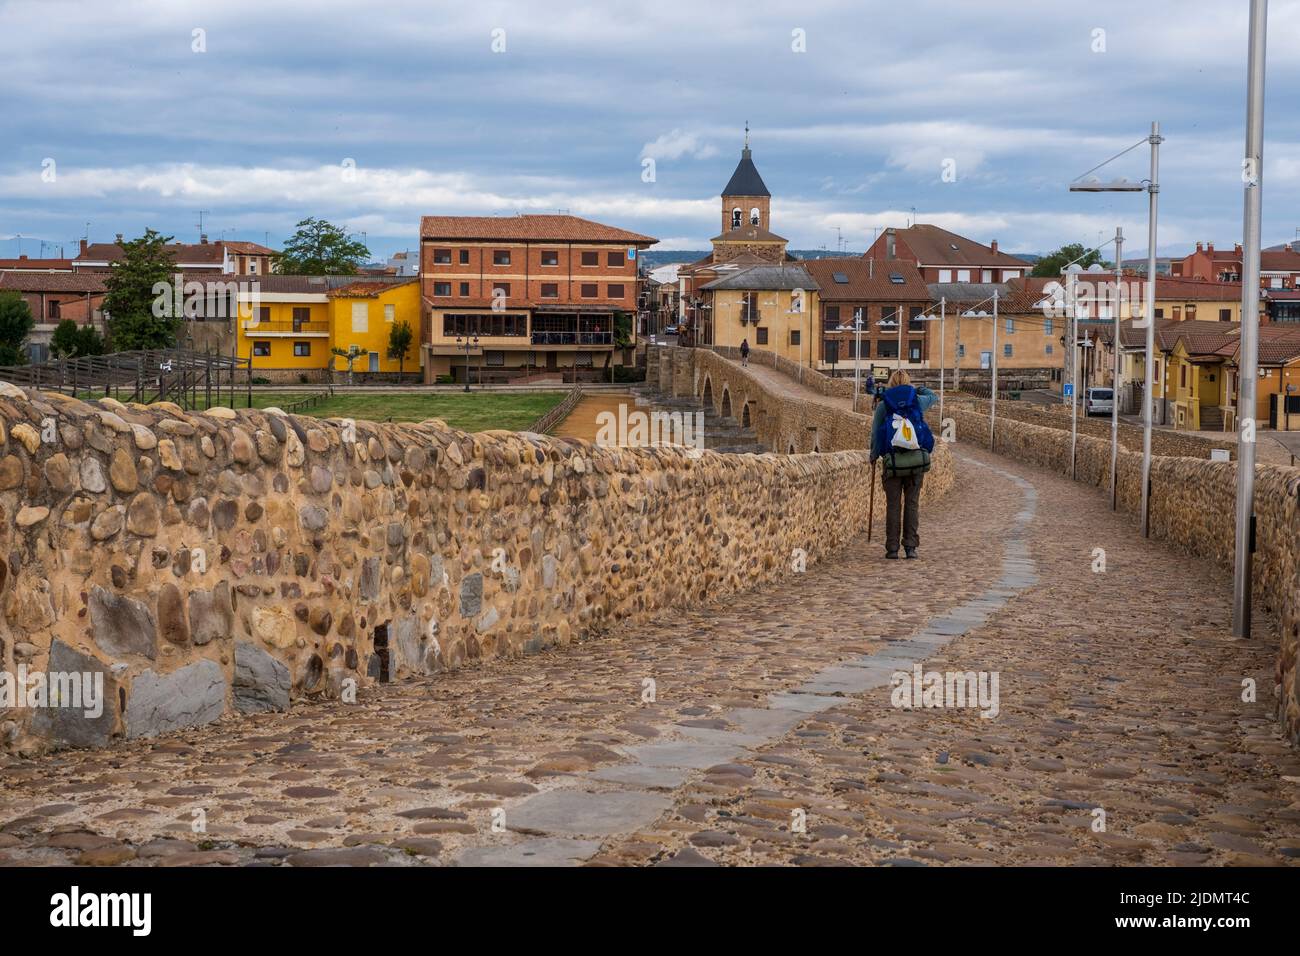 Spain, Castilla y Leon. Puente del Paso Honroso, 13th Century, leading to Hospital de Orbigo. Stock Photo